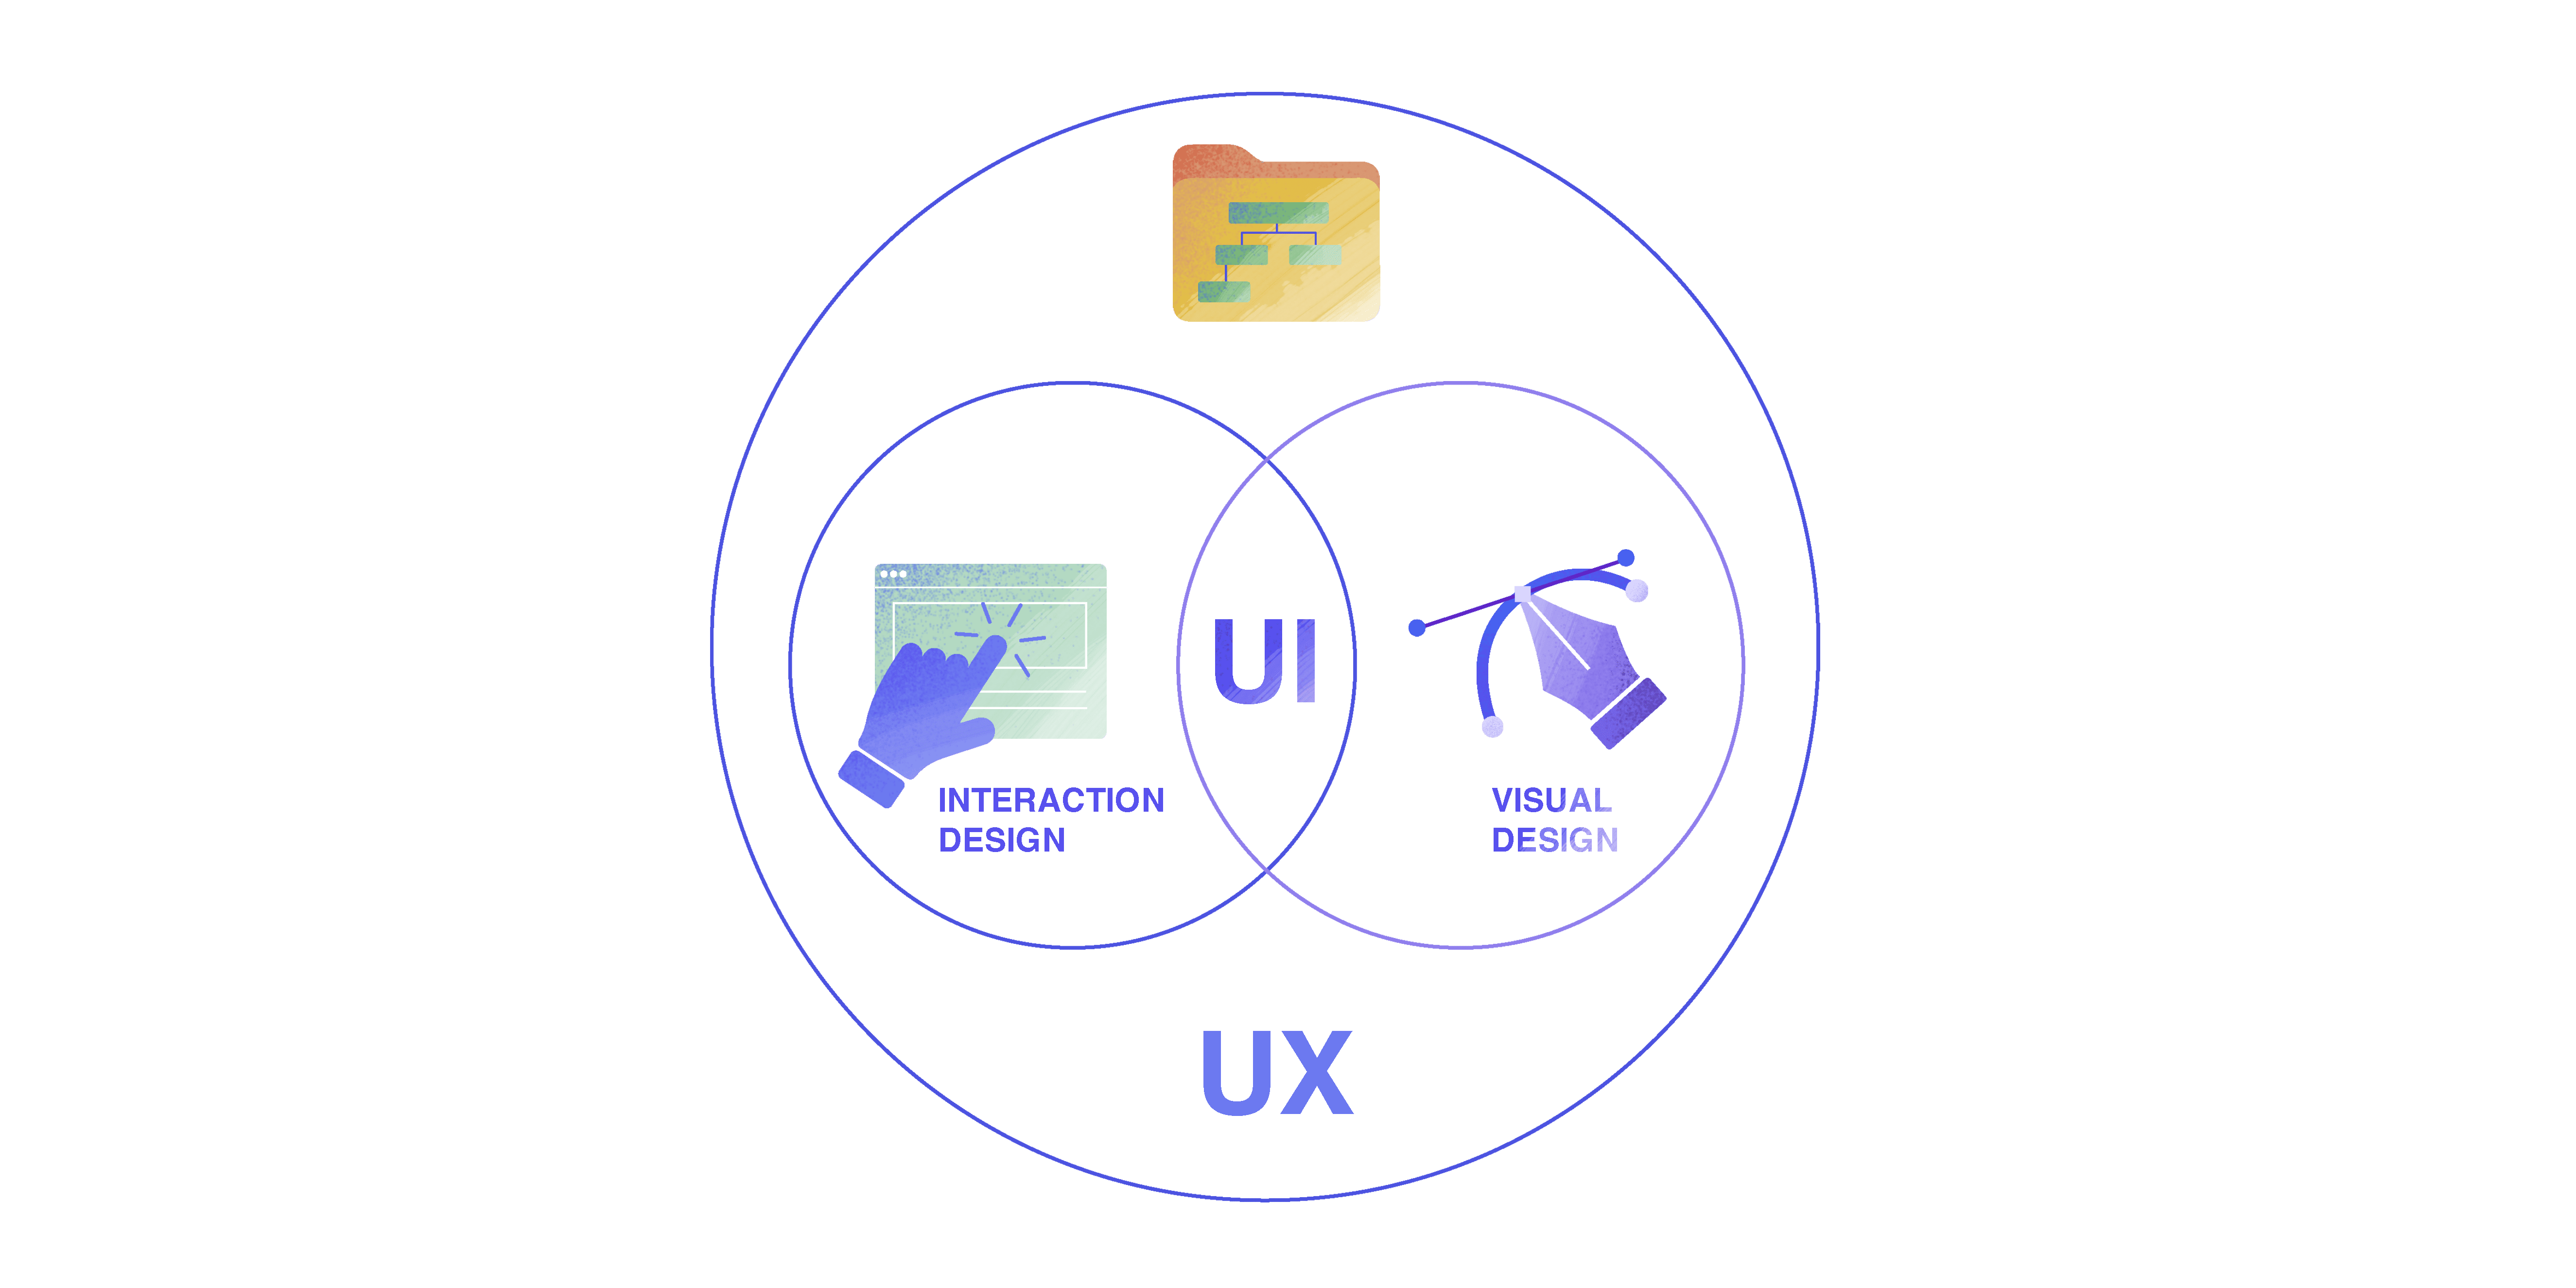 UI is part of UX